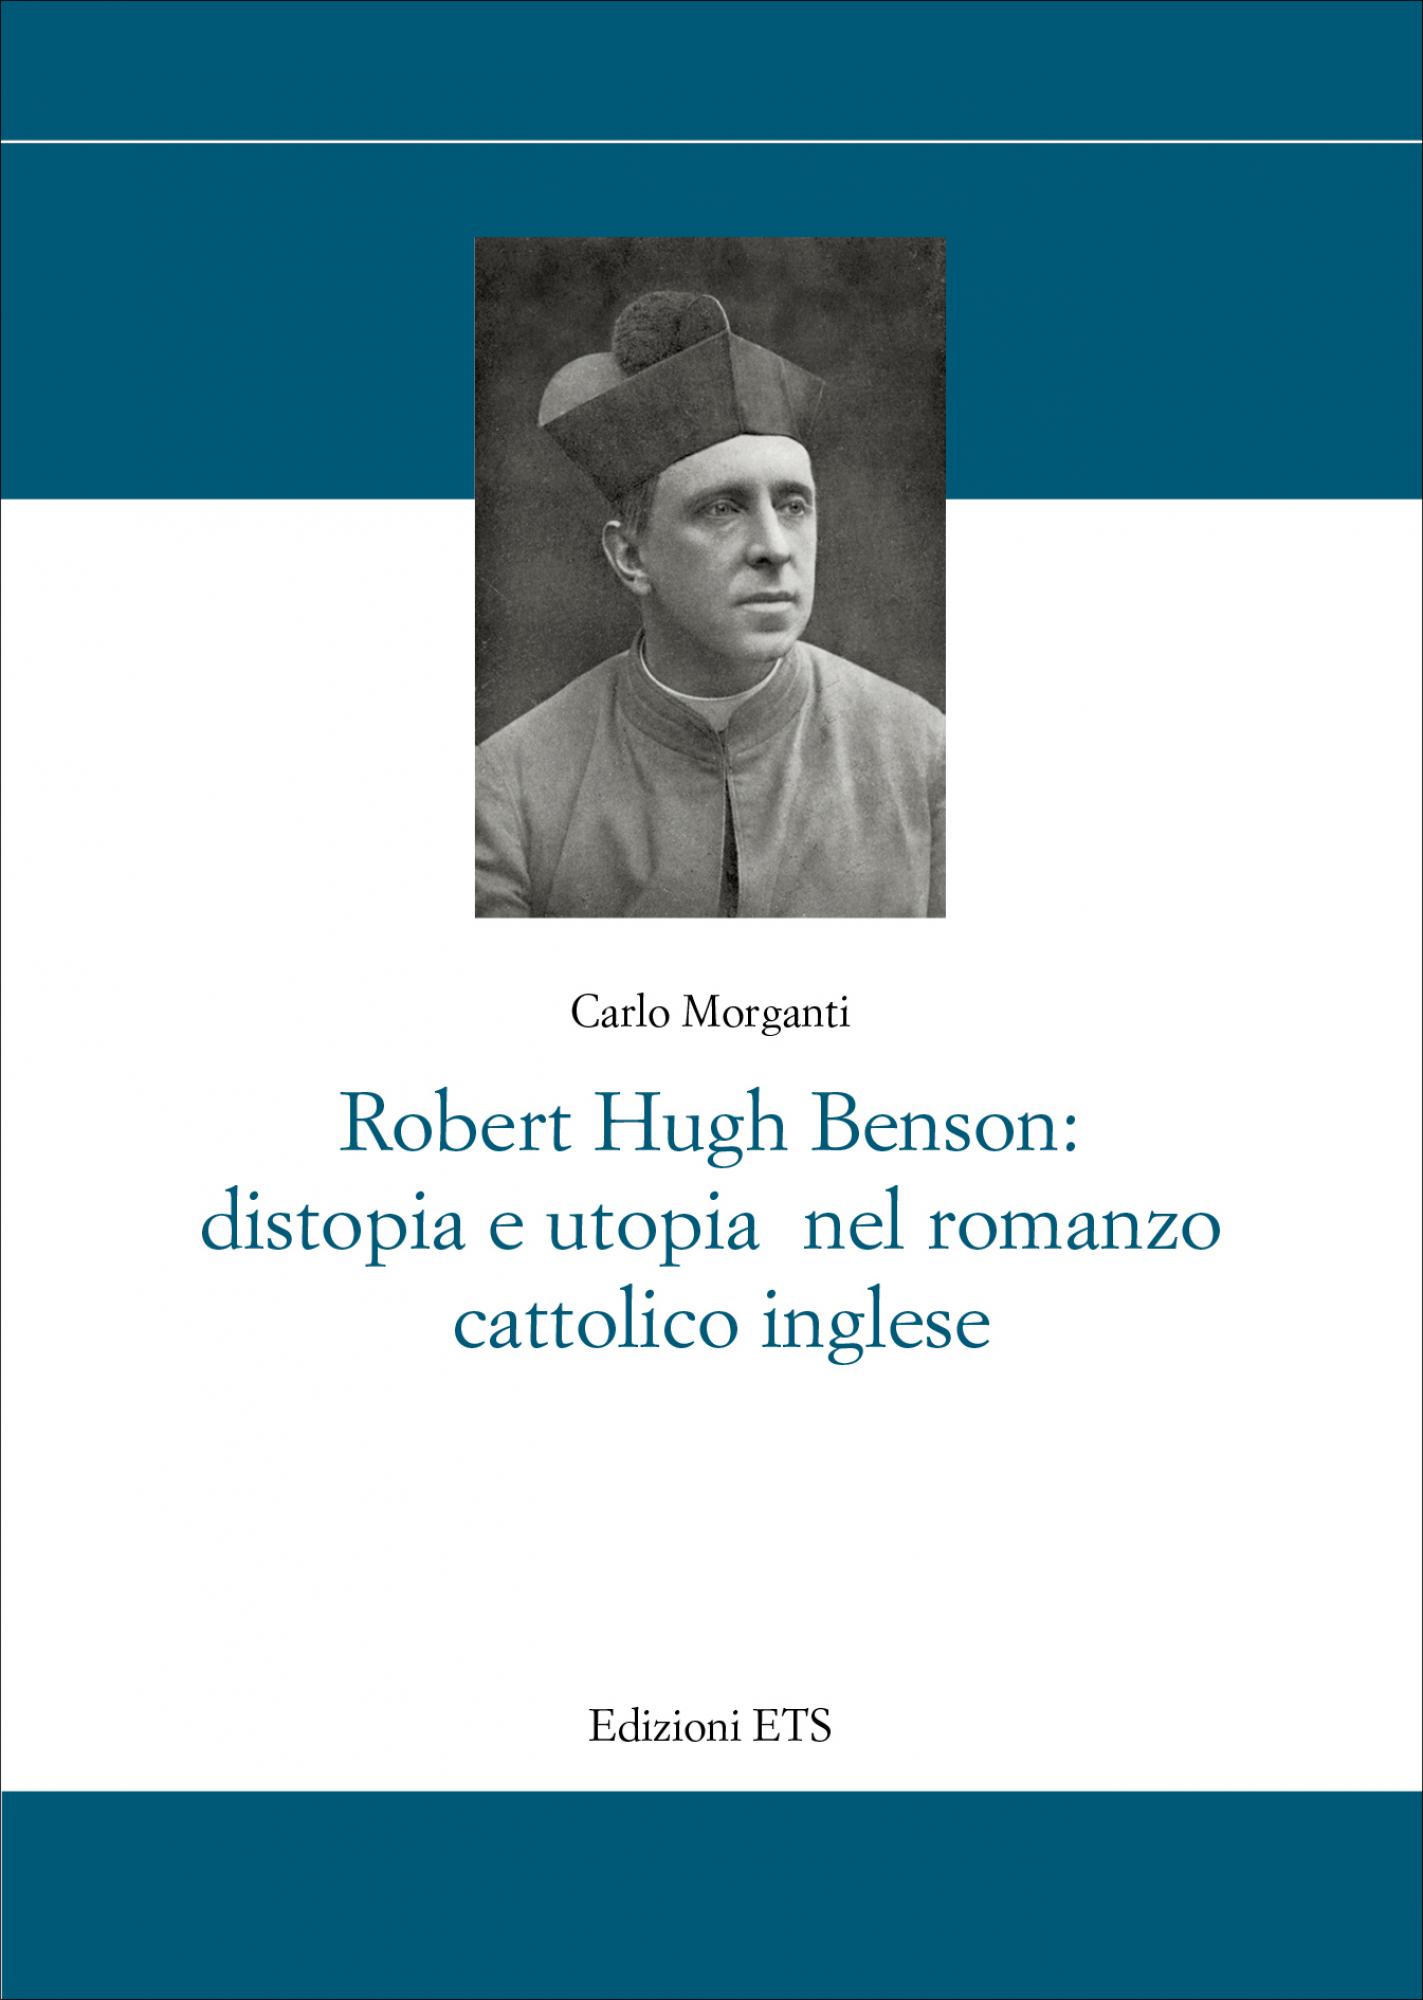 Robert Hugh Benson: distopia e utopia nel romanzo cattolico inglese